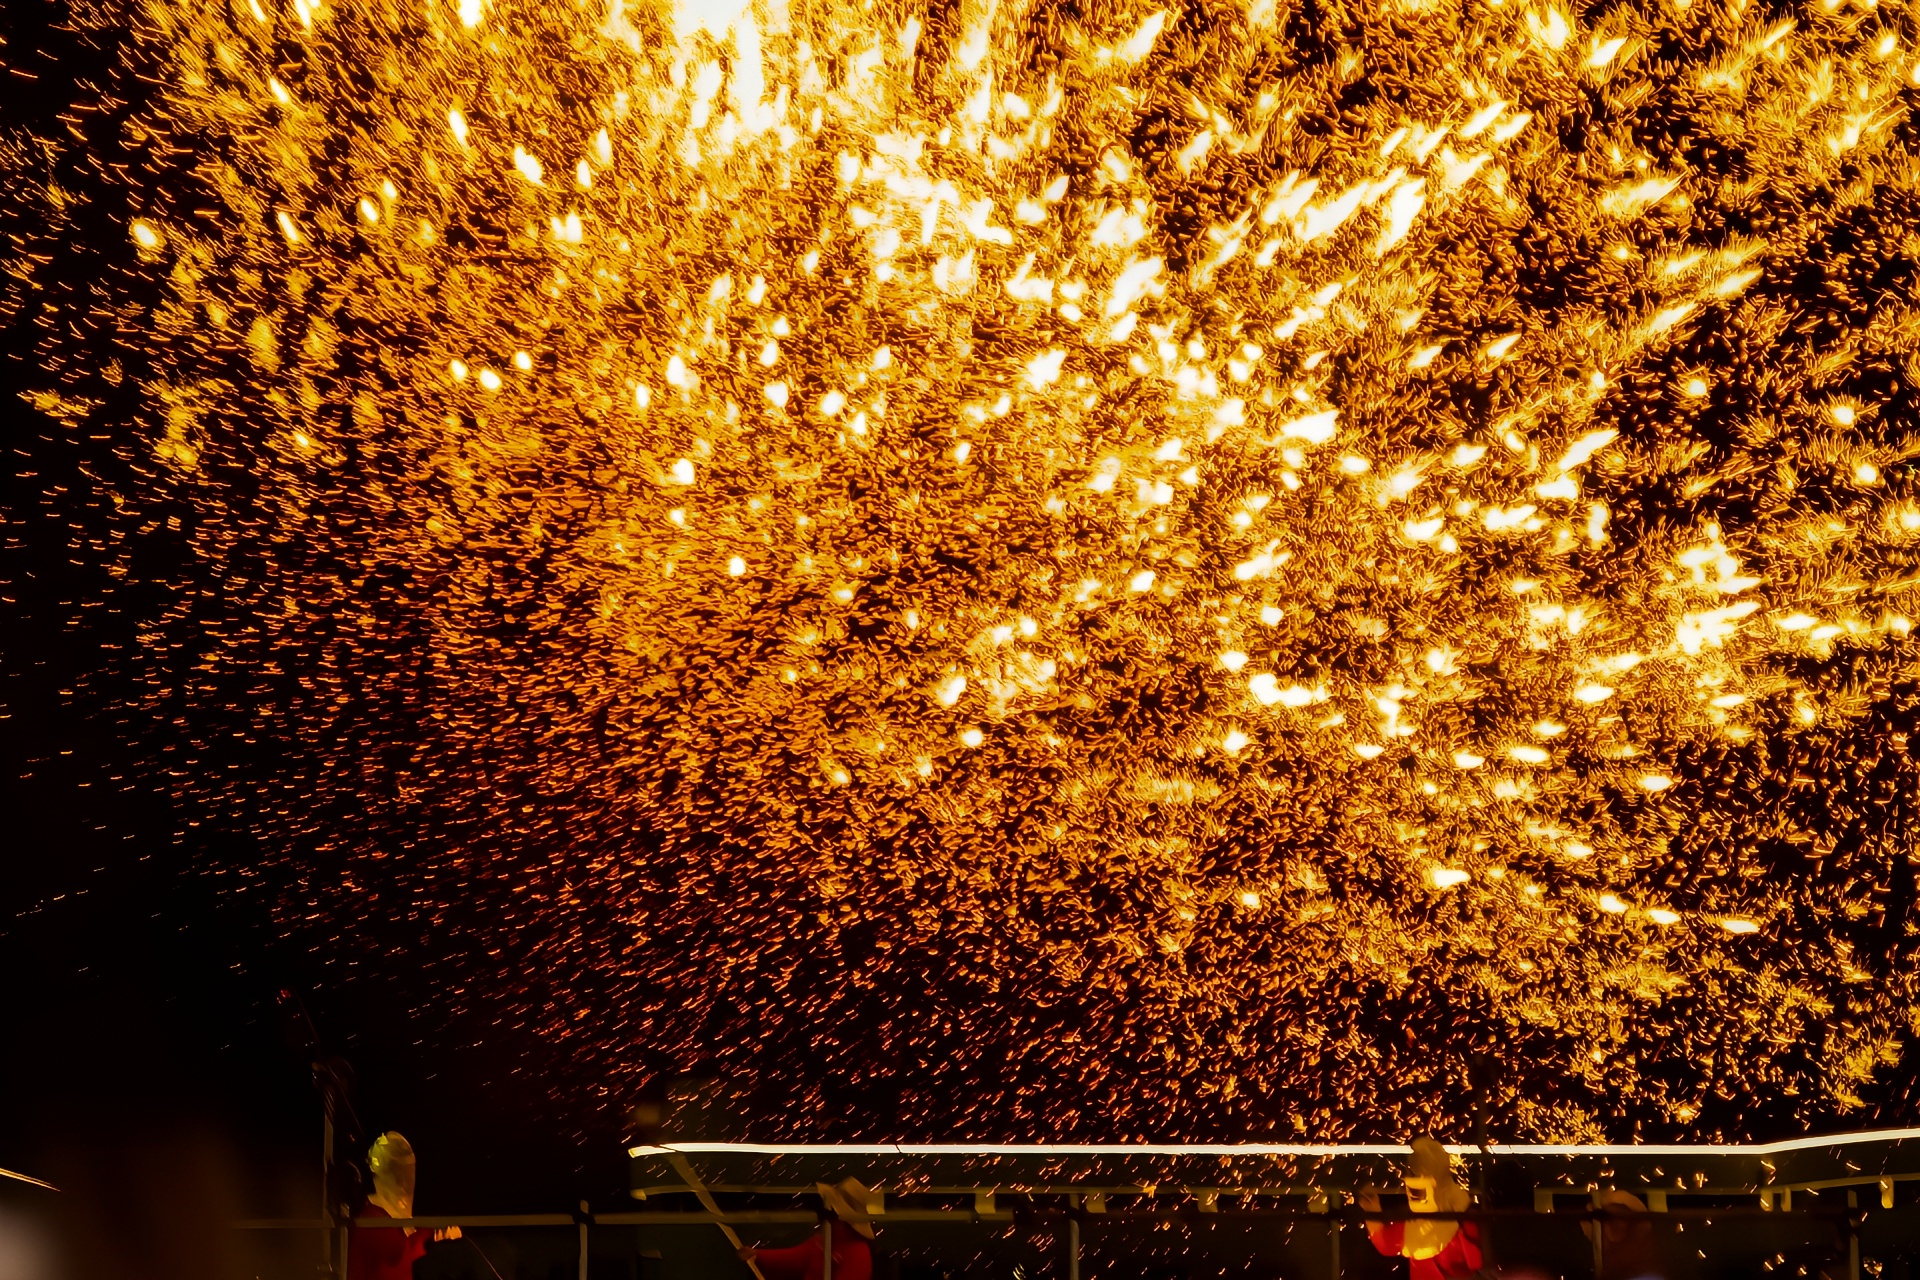 在天等县滨江广场看一场跨越千年的非遗打铁花表演，感受古老浪漫的火树银花!本次打铁花演出将会持续至3月